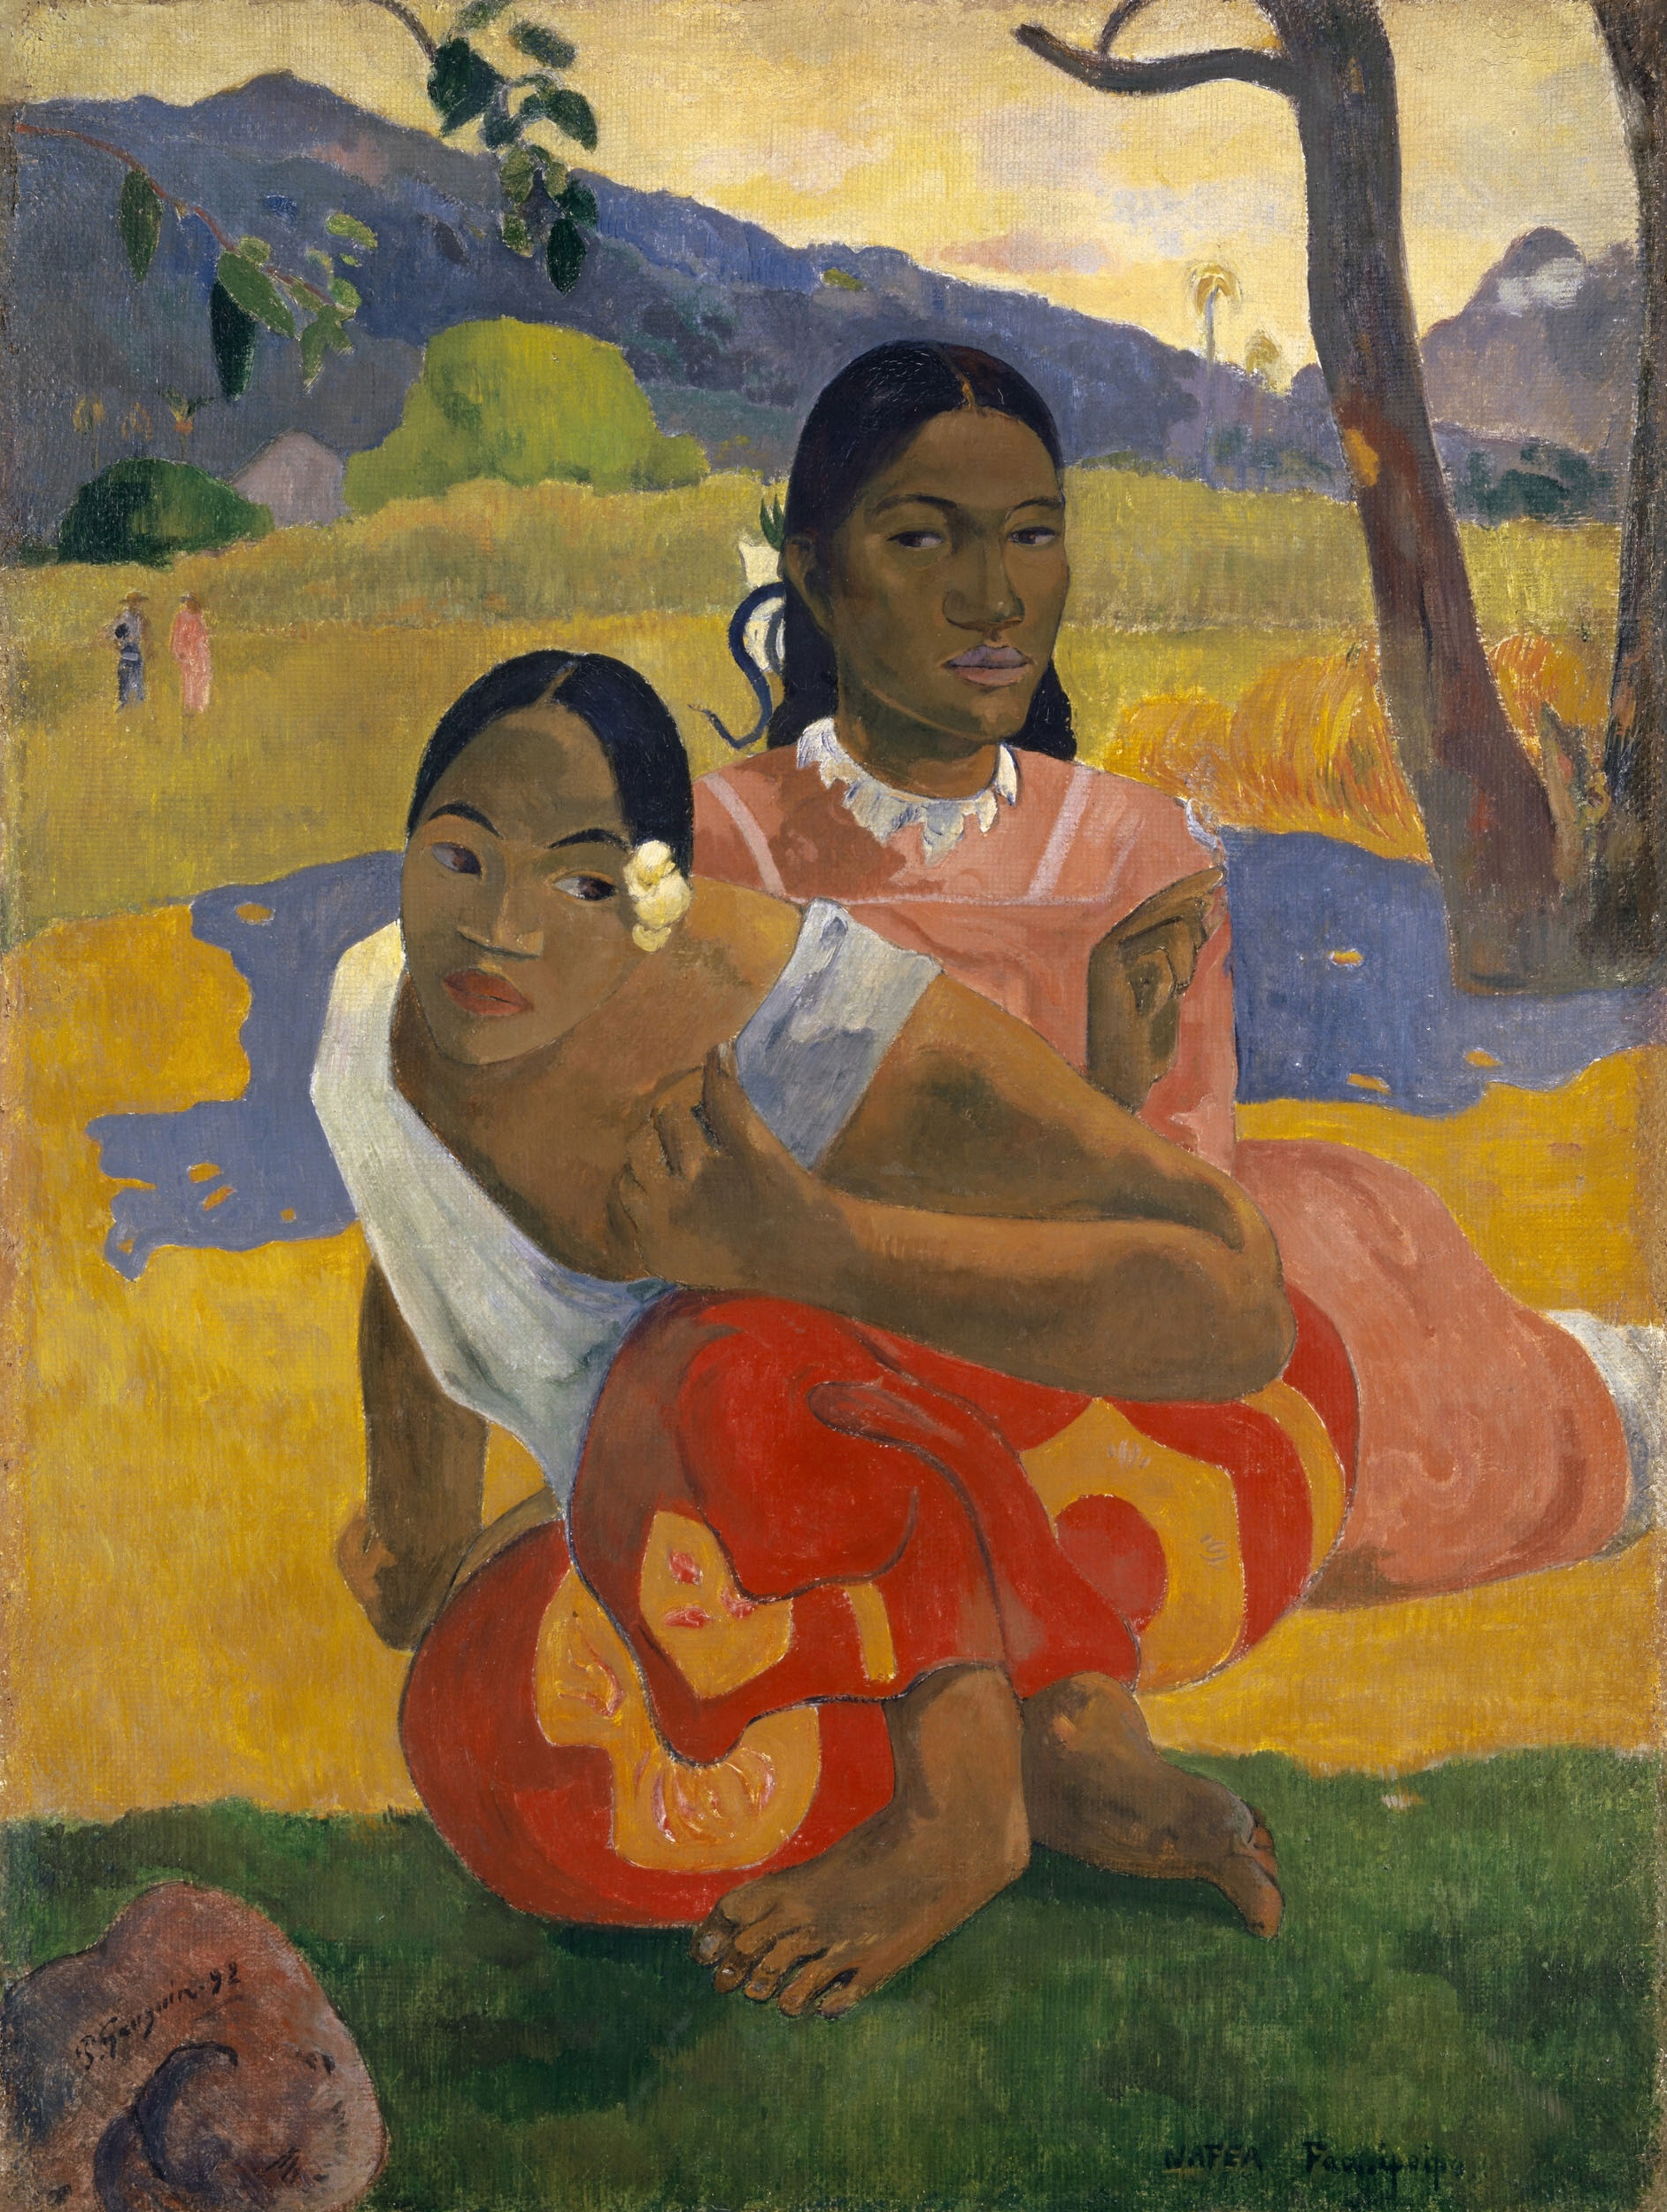 Quando você vai casar? by Paul Gauguin - 1892 coleção privada